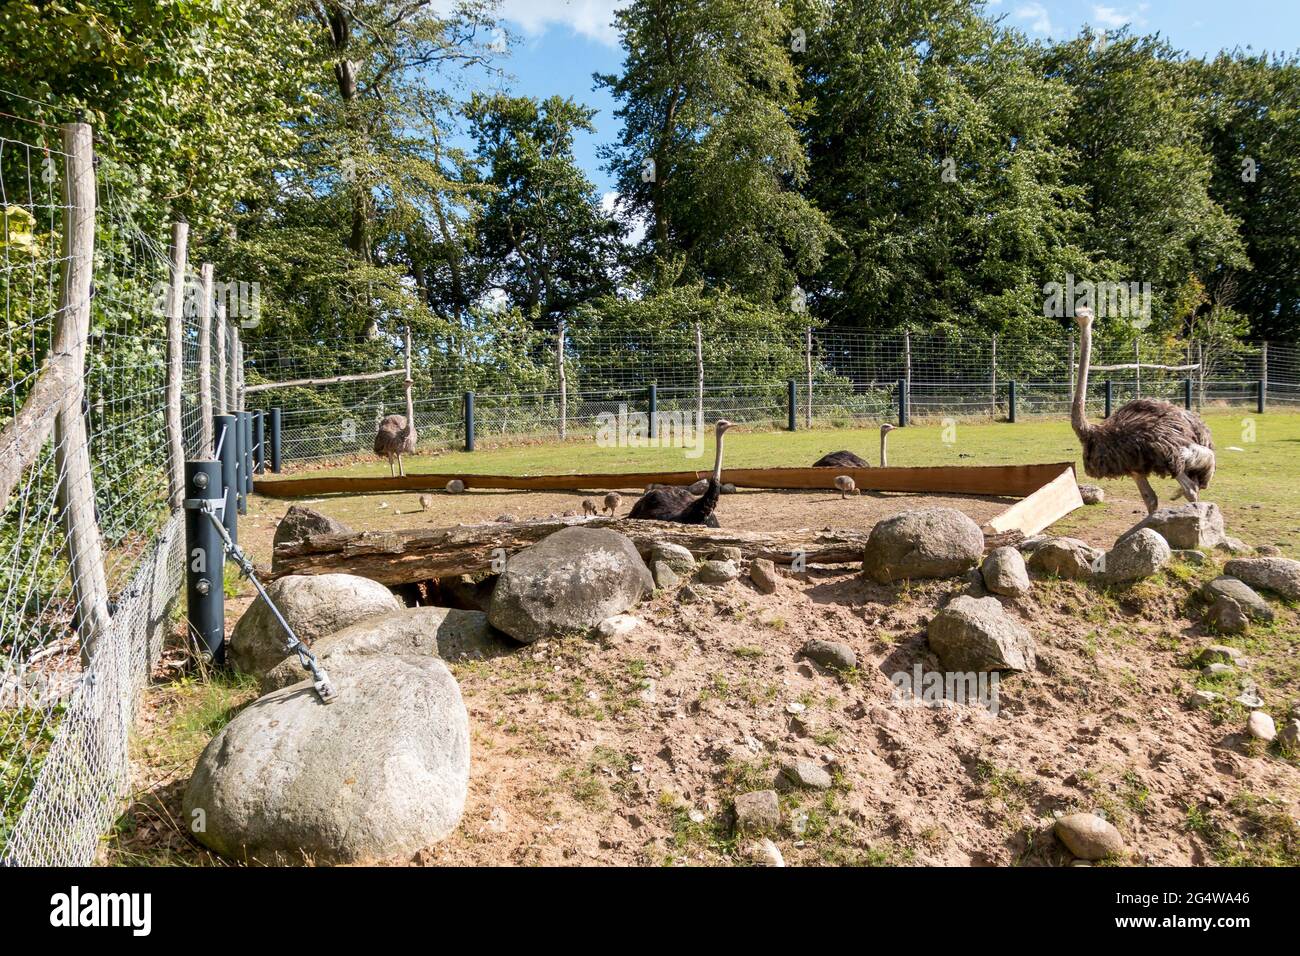 Ebeltoft, Danimarca - 21 luglio 2020: Struzzi con i cuccioli mentono e si curano i cuccioli, Ostrich cuccioli giocare accanto allo struzzo adulto Foto Stock